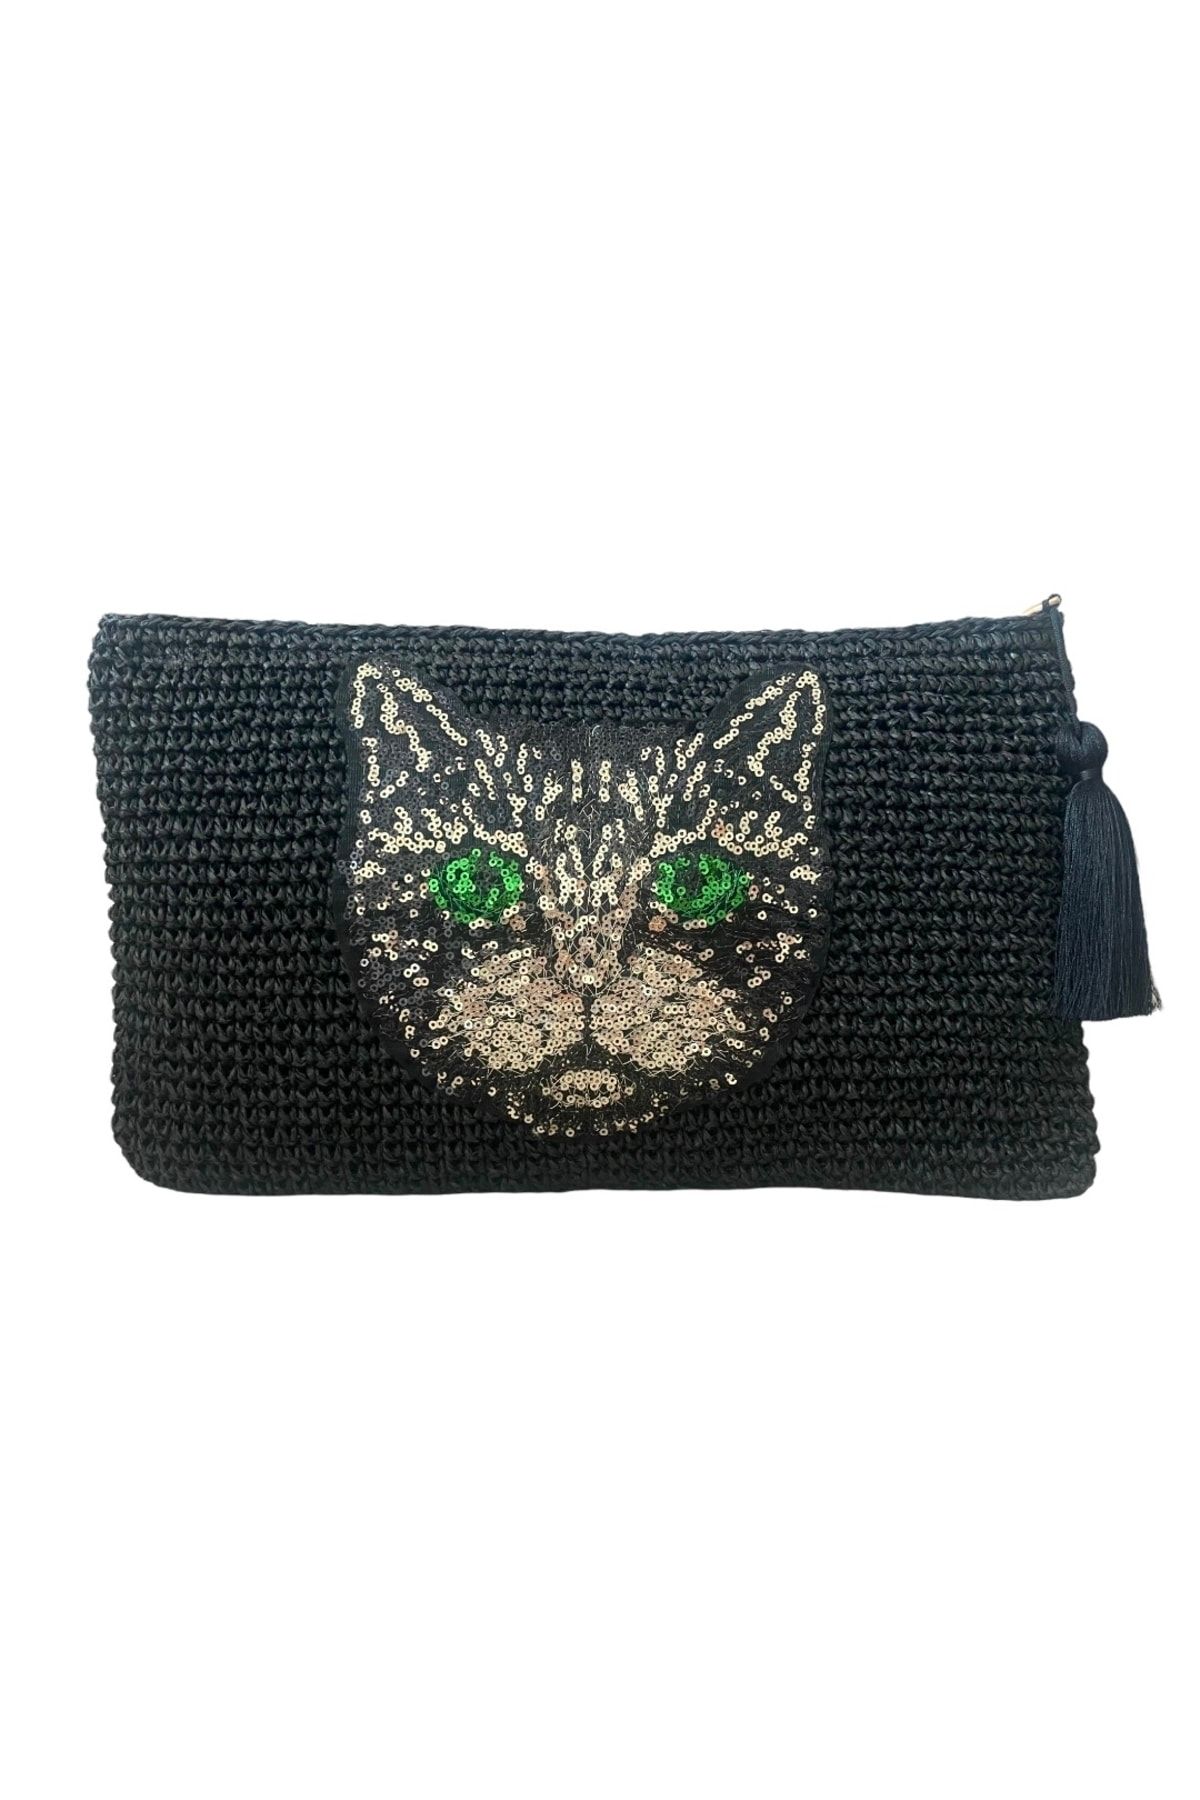 Ceren Öncel Atelier Cat Bag